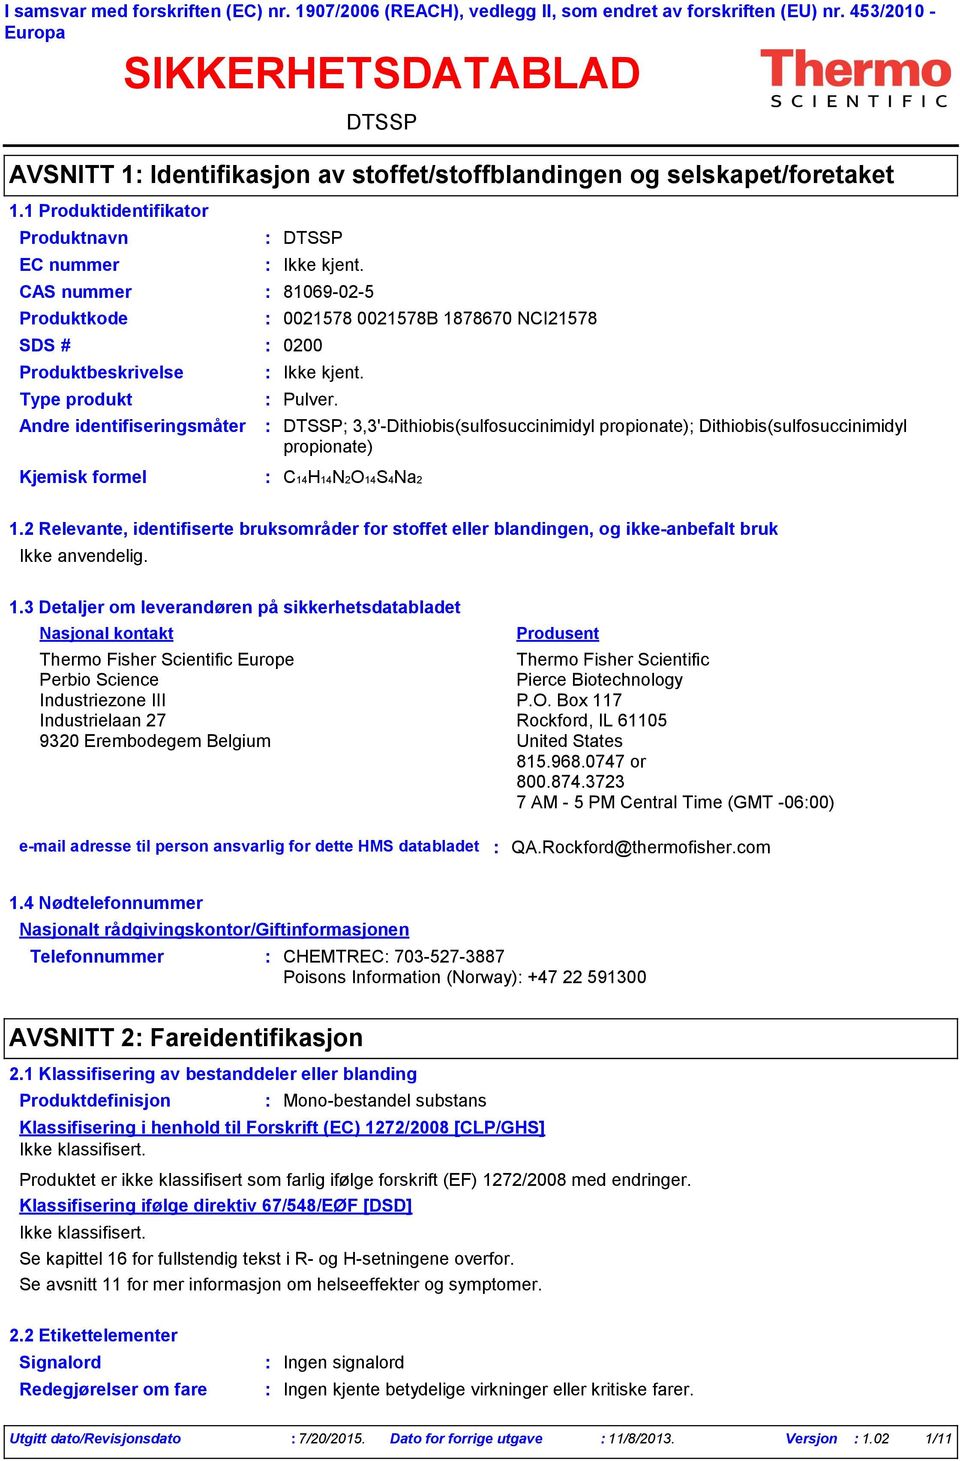 AVSNITT 1 Identifikasjon av stoffet/stoffblandingen og selskapet/foretaket EC nummer Produktkode SDS # 0200 0021578 0021578B 1878670 NCI21578 ; 3,3'Dithiobis(sulfosuccinimidyl propionate);